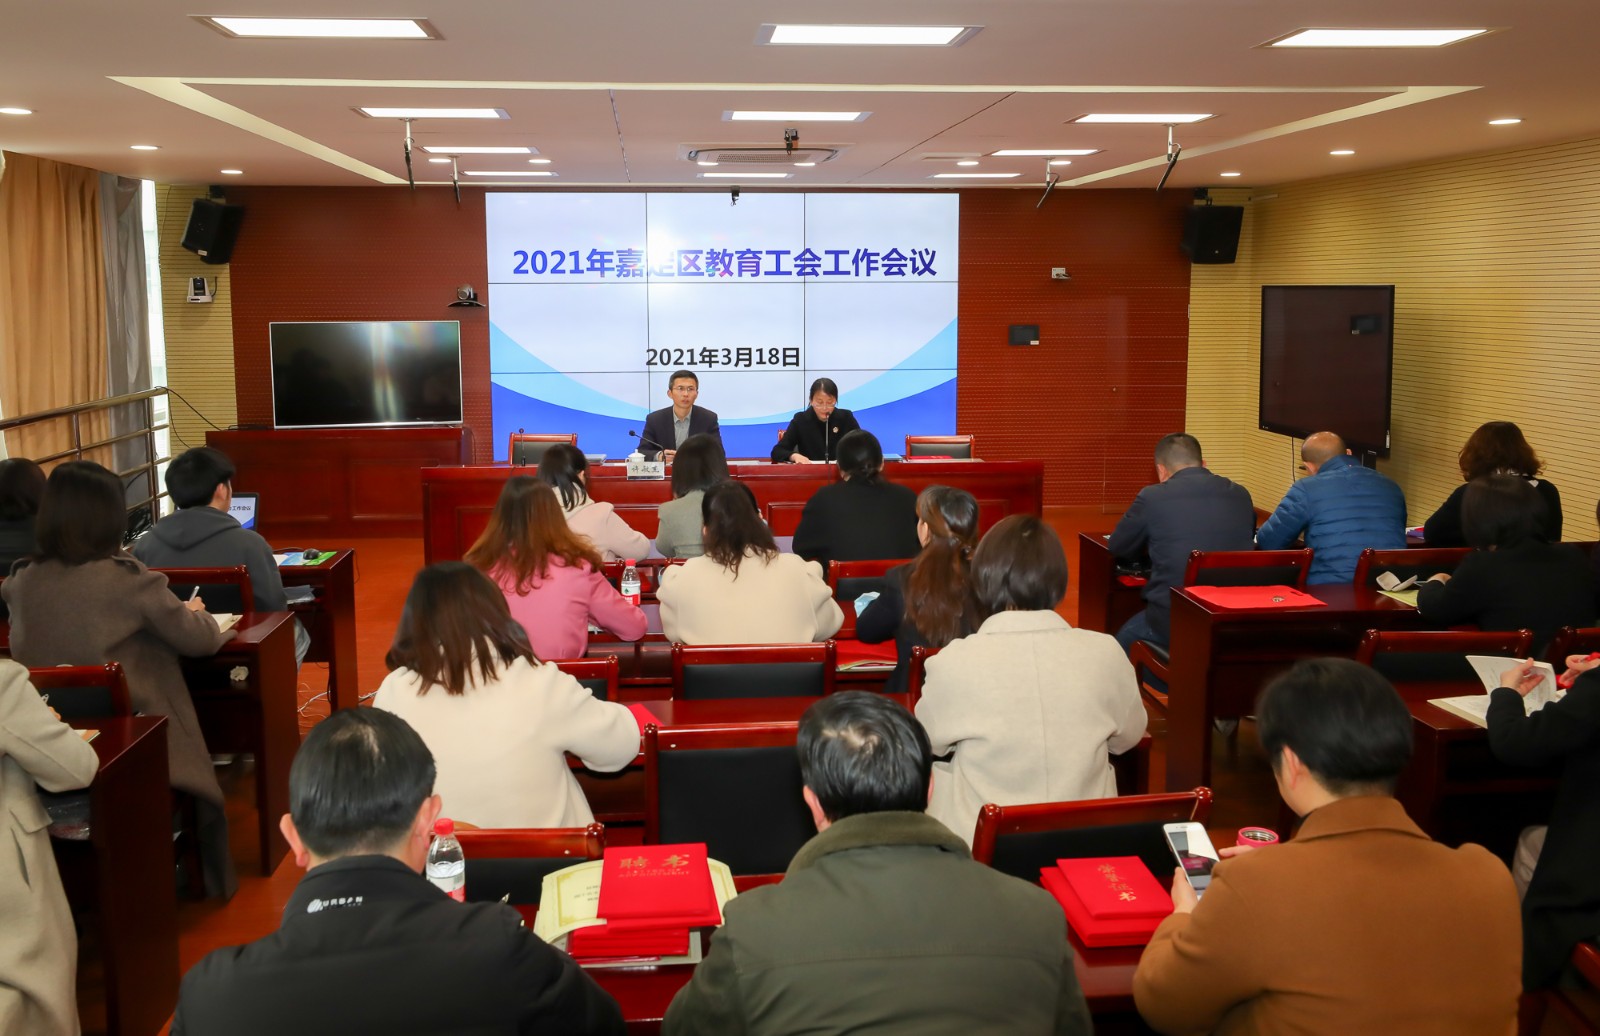 2021-3-18嘉定区教育工会会议 (1).jpg